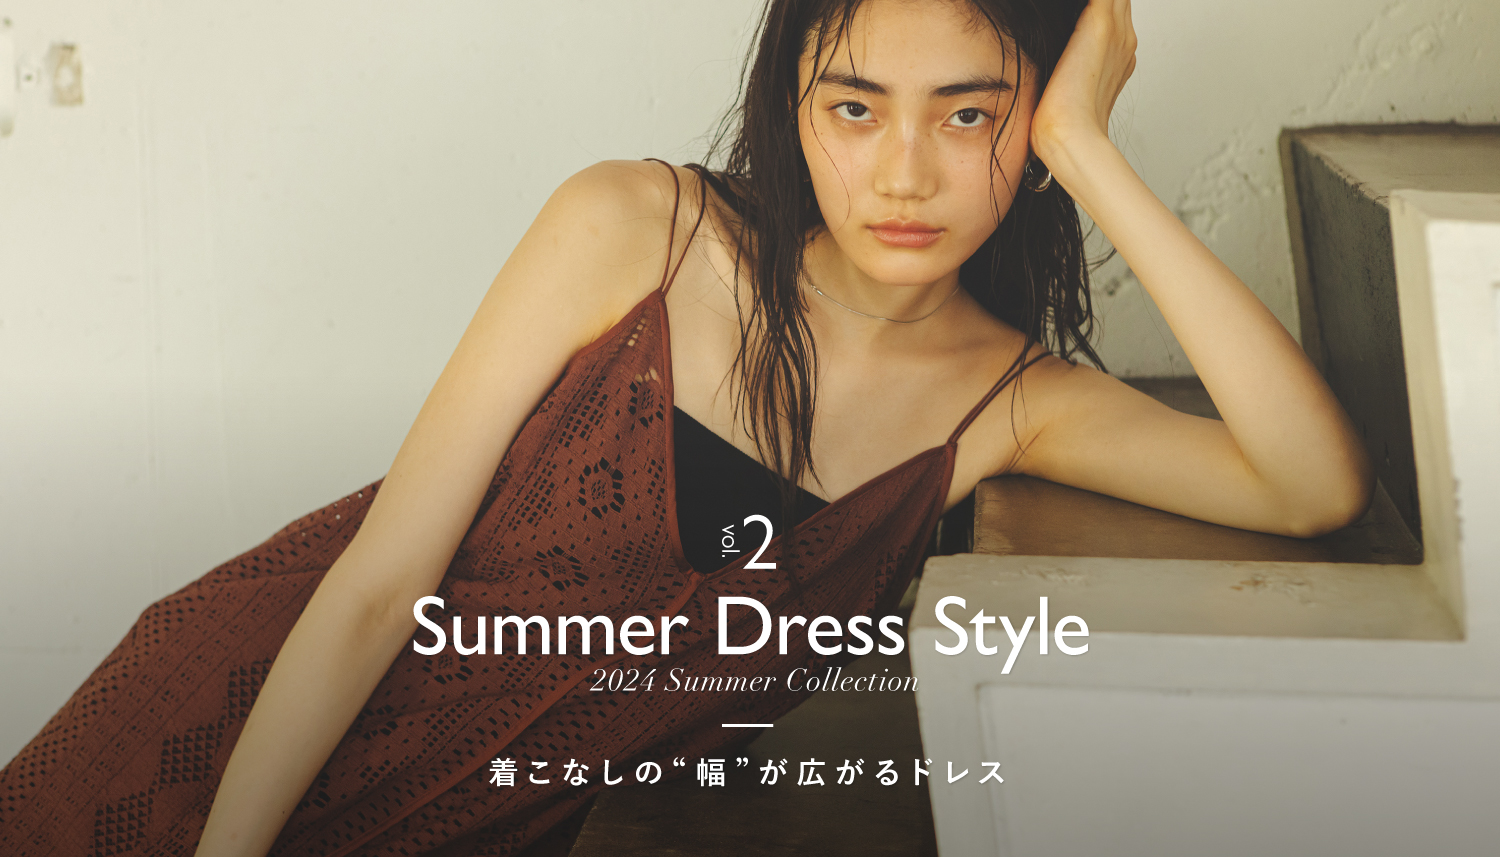 ナノ・ユニバースより、夏のワンピーススタイルを詰め込んだWEBコンテンツ「Summer Dress Style」が公開